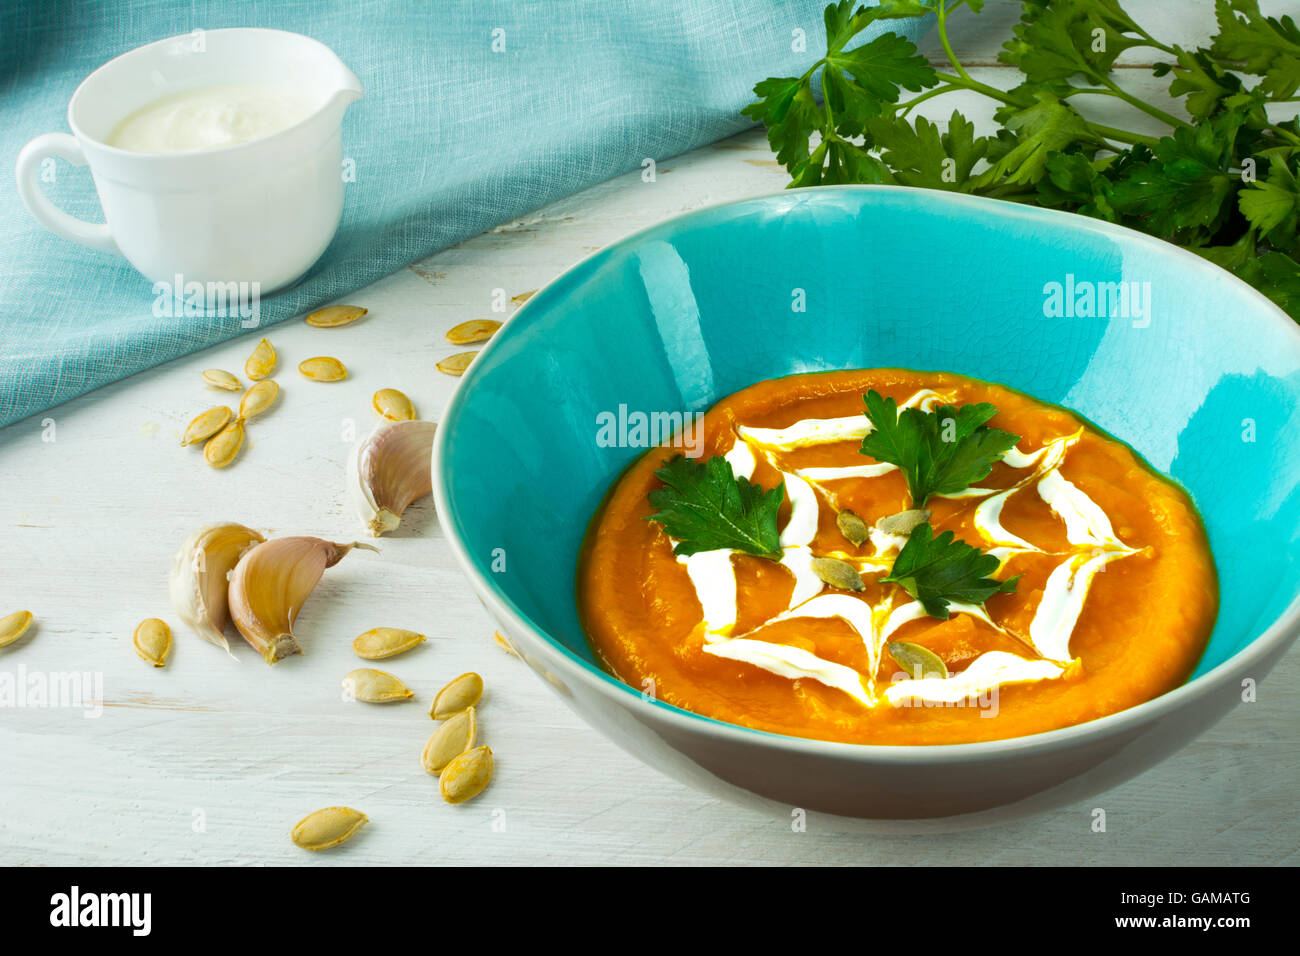 Zucca zucca vegetale zuppa cremosa e rabboccato con la crema di latte in una piastra di turchese, semi di zucca, aglio e prezzemolo su legno bianco b Foto Stock